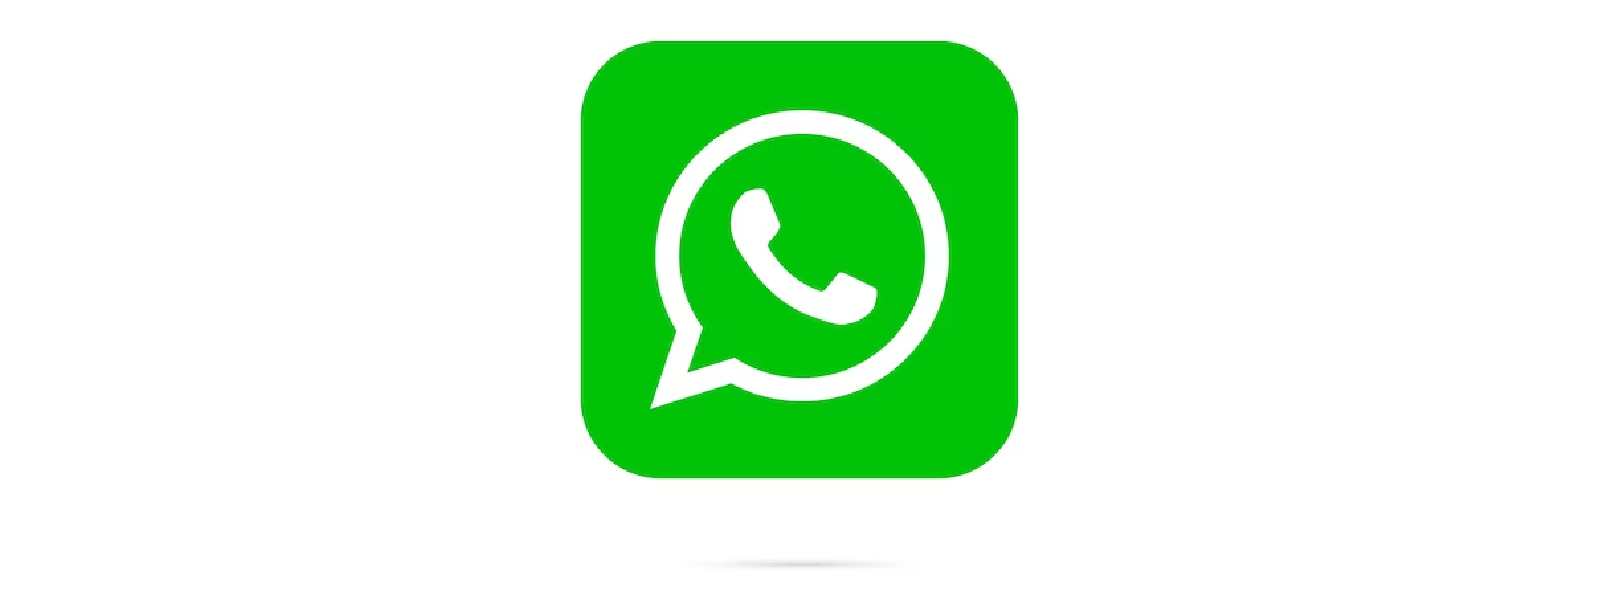 WhatsApp 'Status' changes to 'Updates'